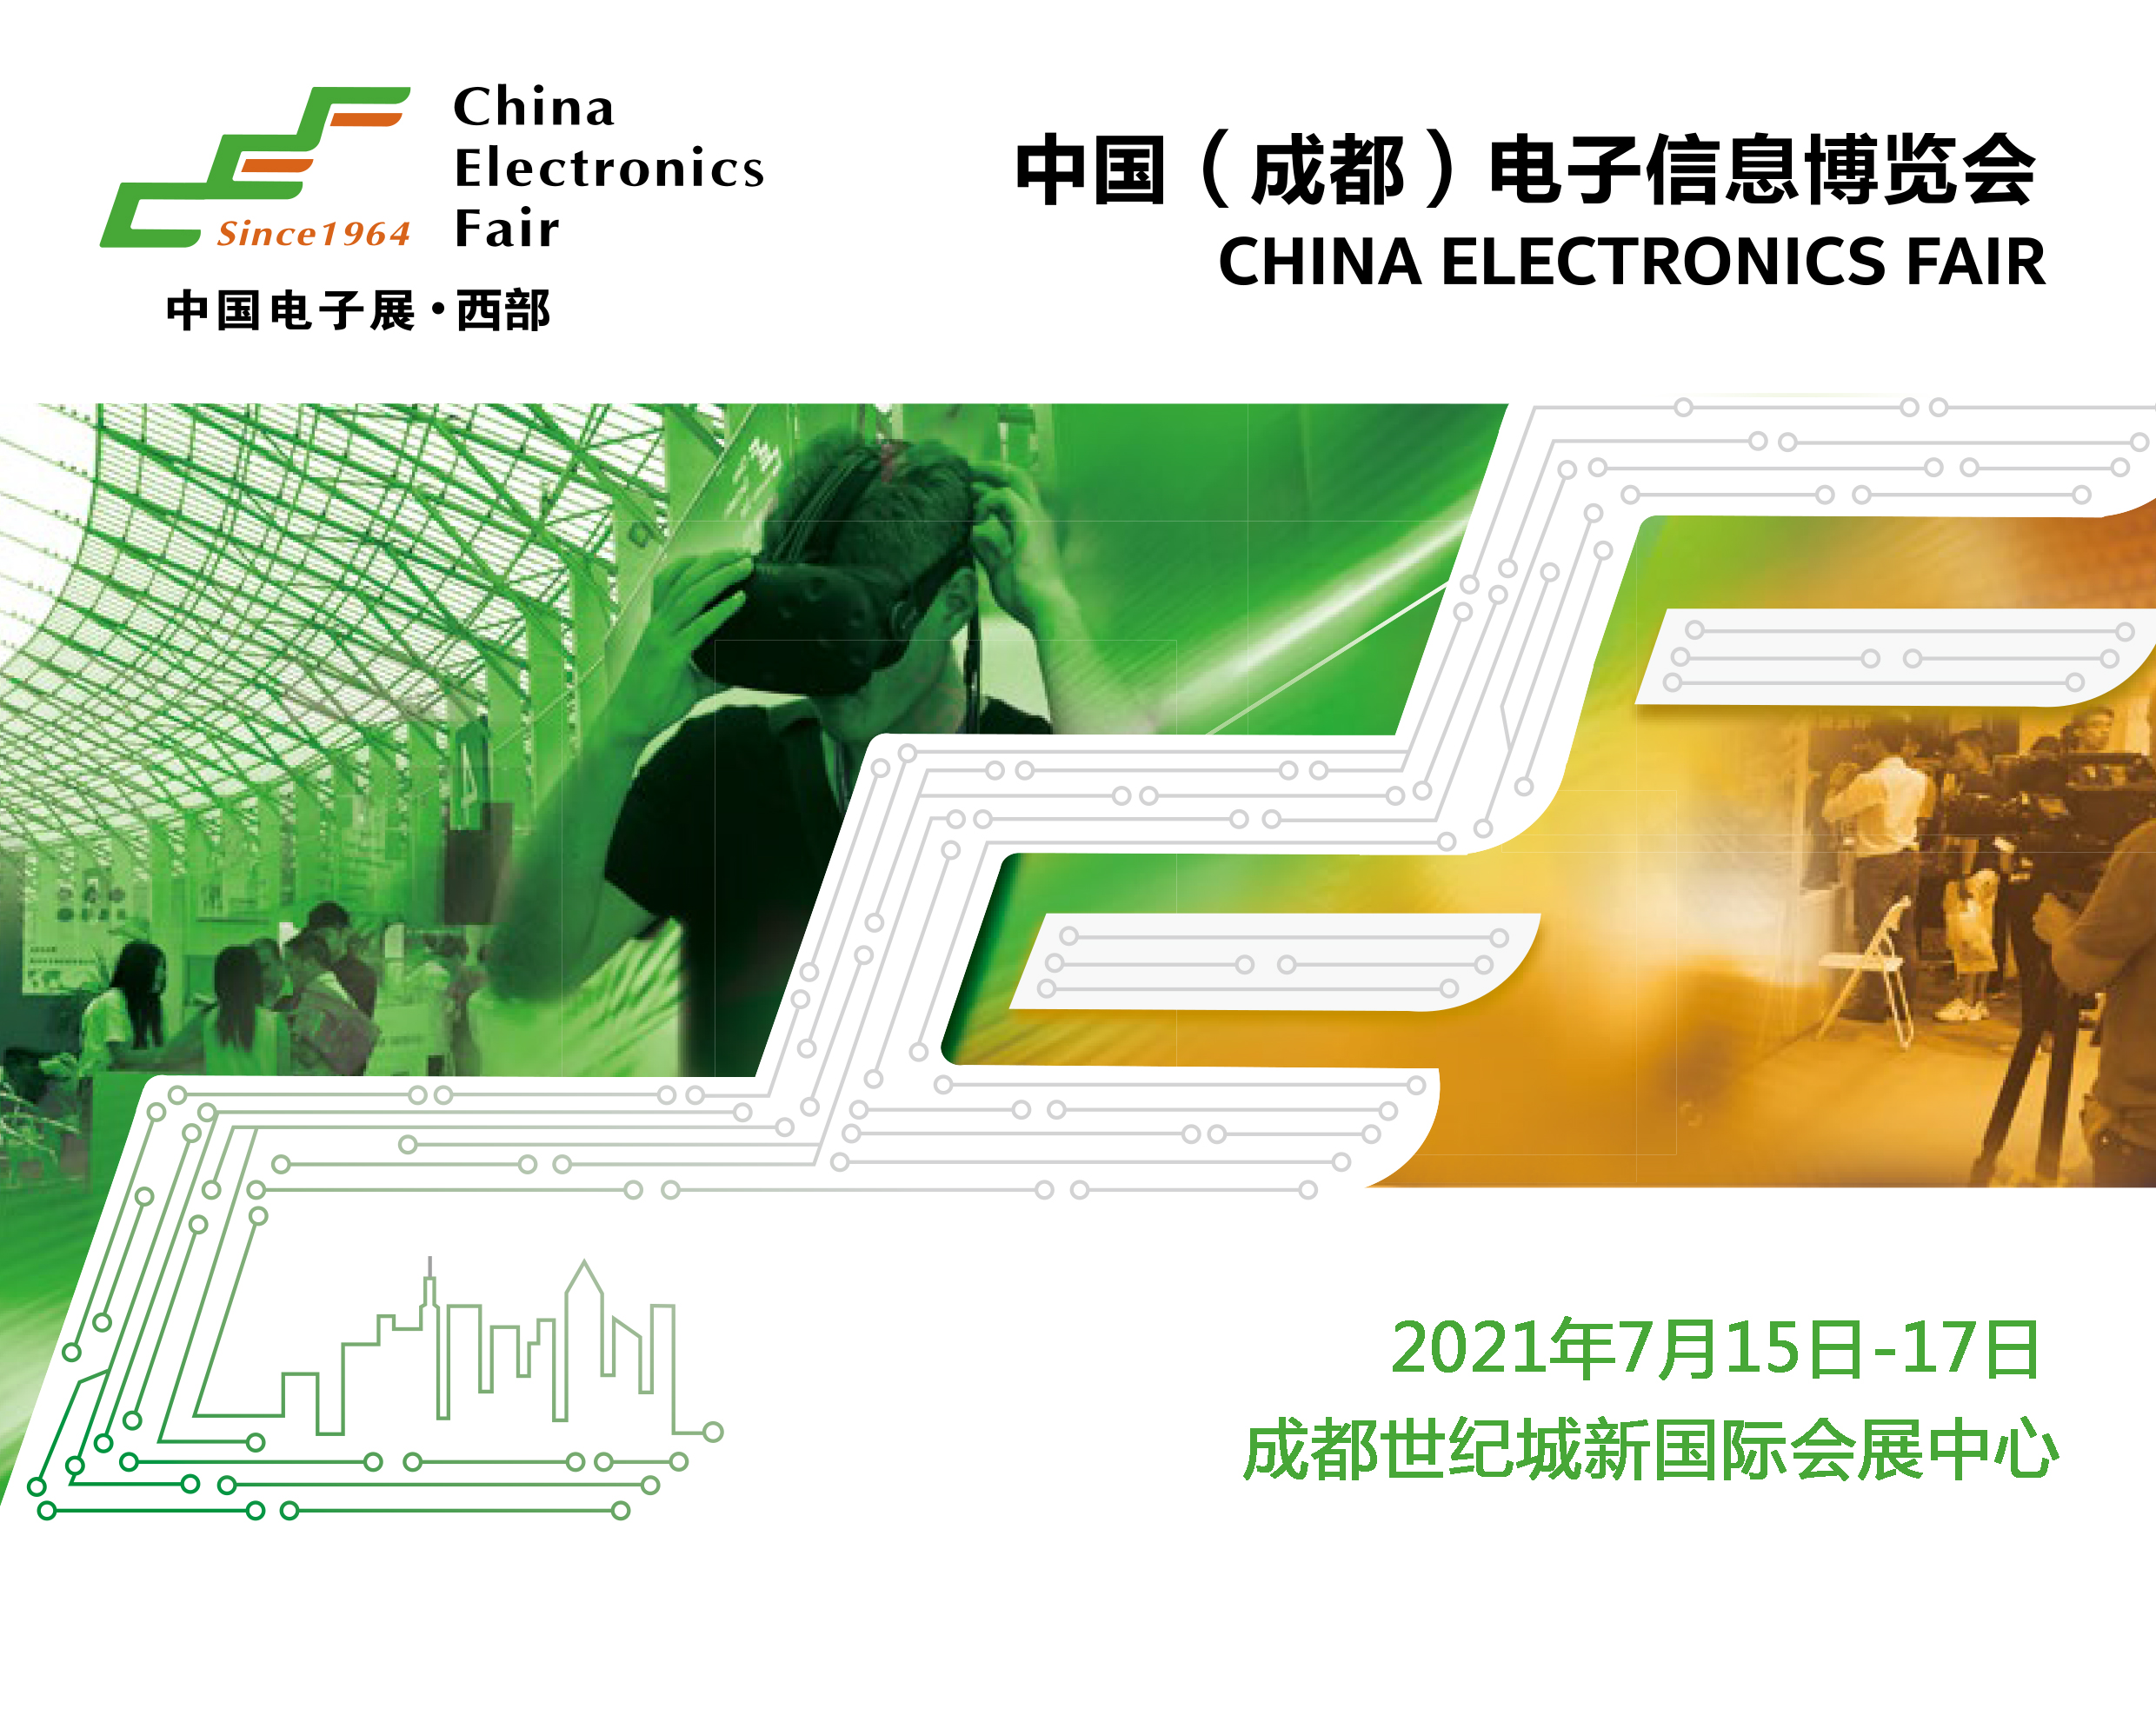 2022中国（成都）电子信息博览会